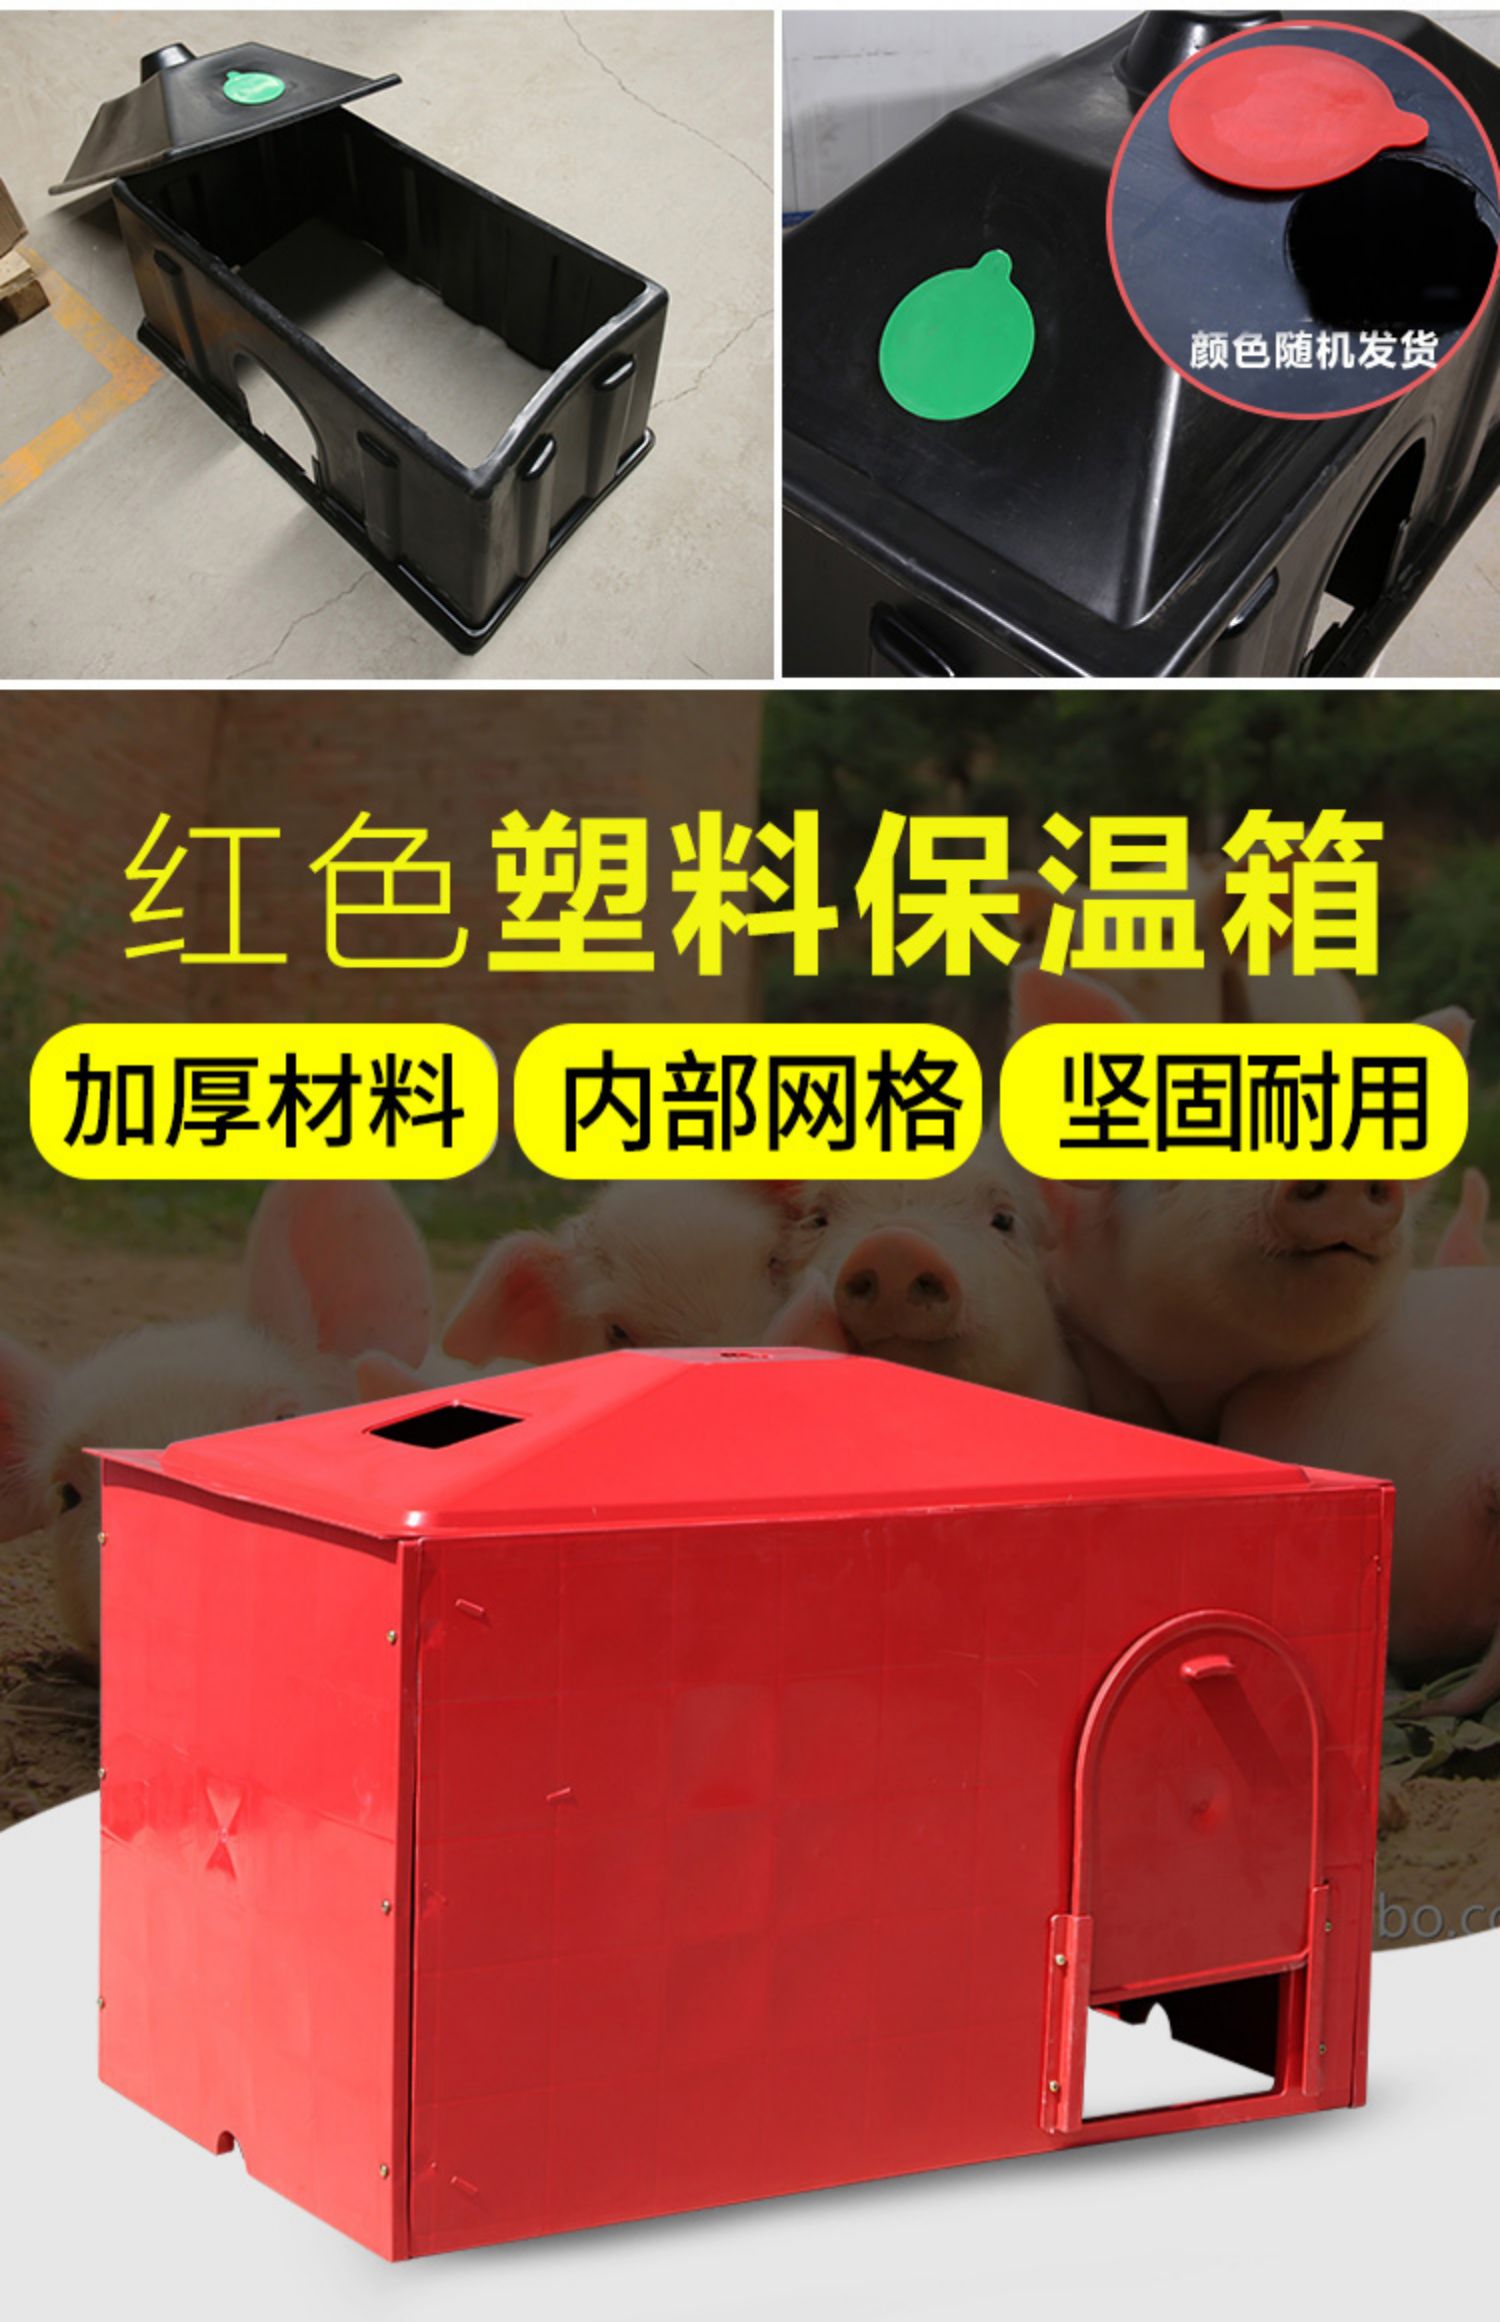 仔猪保温箱小猪保暖箱猪用产床保温箱母猪产床电热板猪用养殖设备麦桑